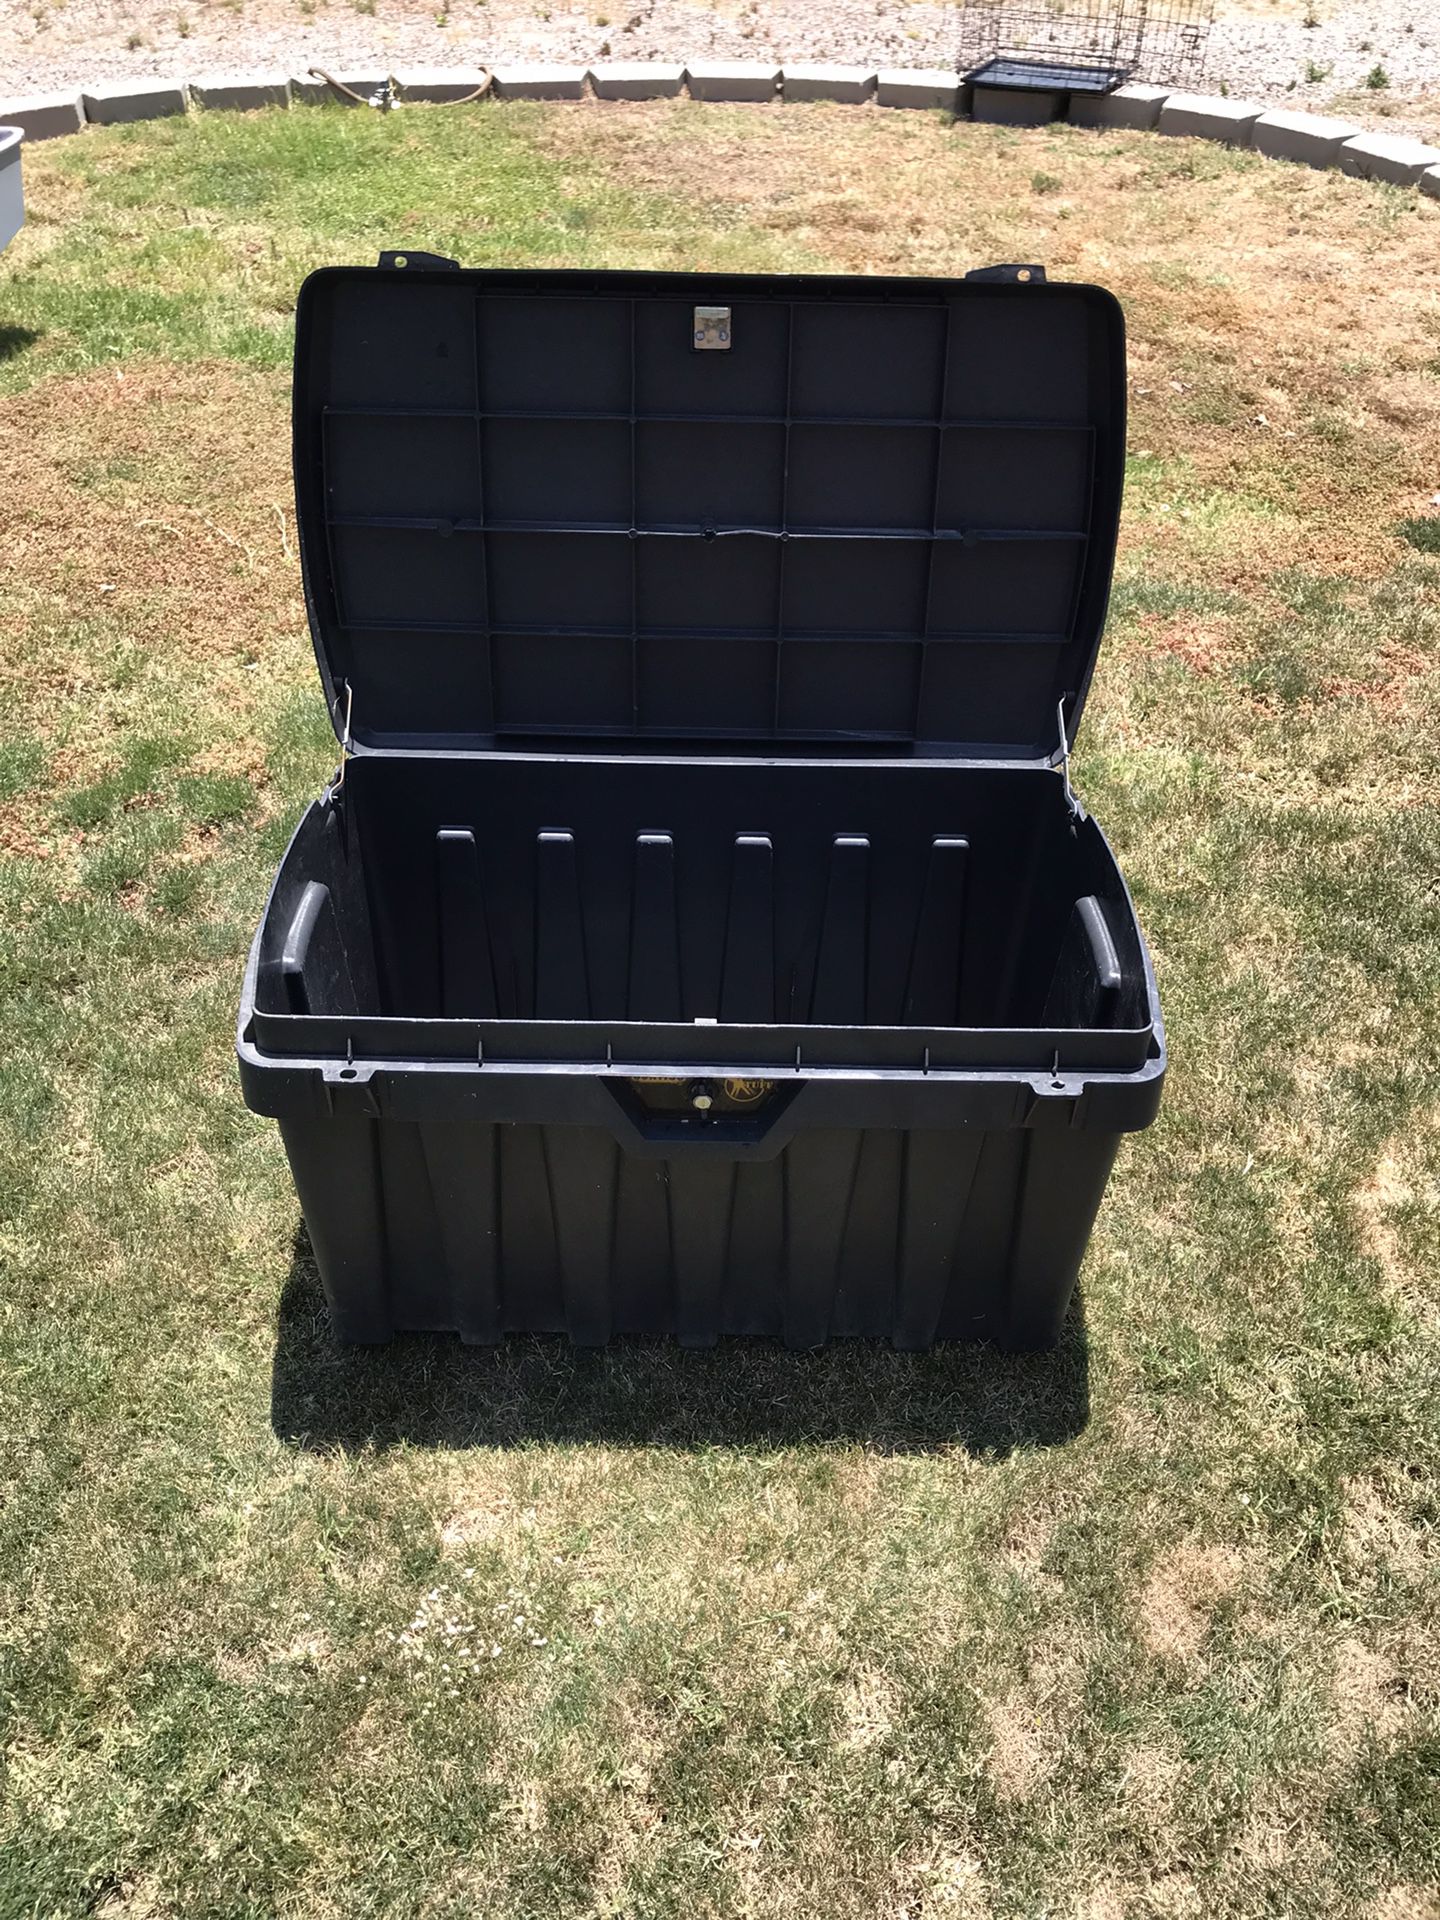 Contico Pro Tuff Storage Locker Tool Box for Sale in Oak Park, IL - OfferUp